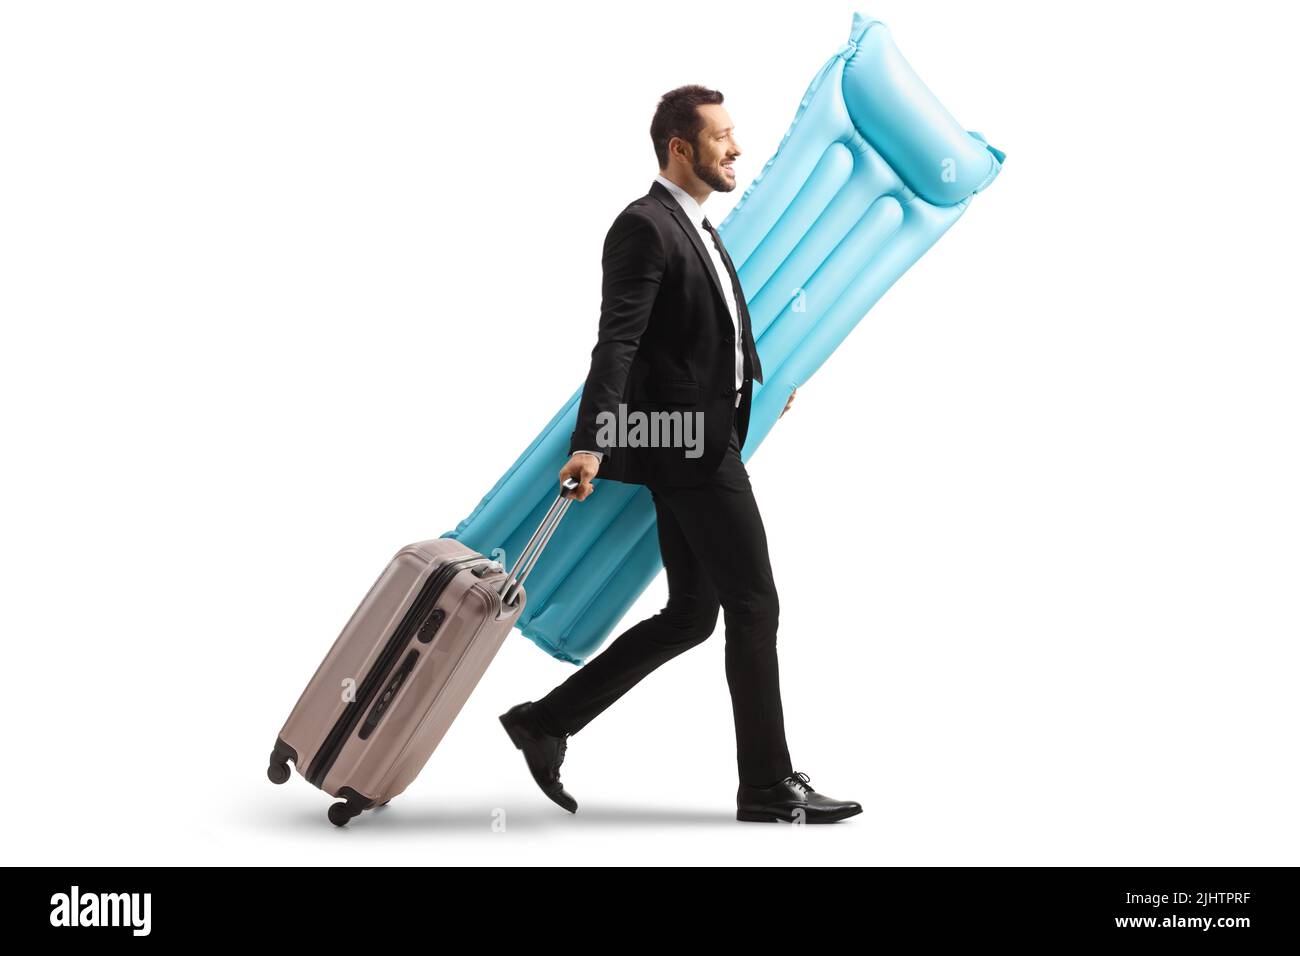 Ganzkörperaufnahme eines Geschäftsmanns, der eine wasserschwimmende Matratze trägt und einen auf weißem Hintergrund isolierten Koffer aufbläst Stockfoto